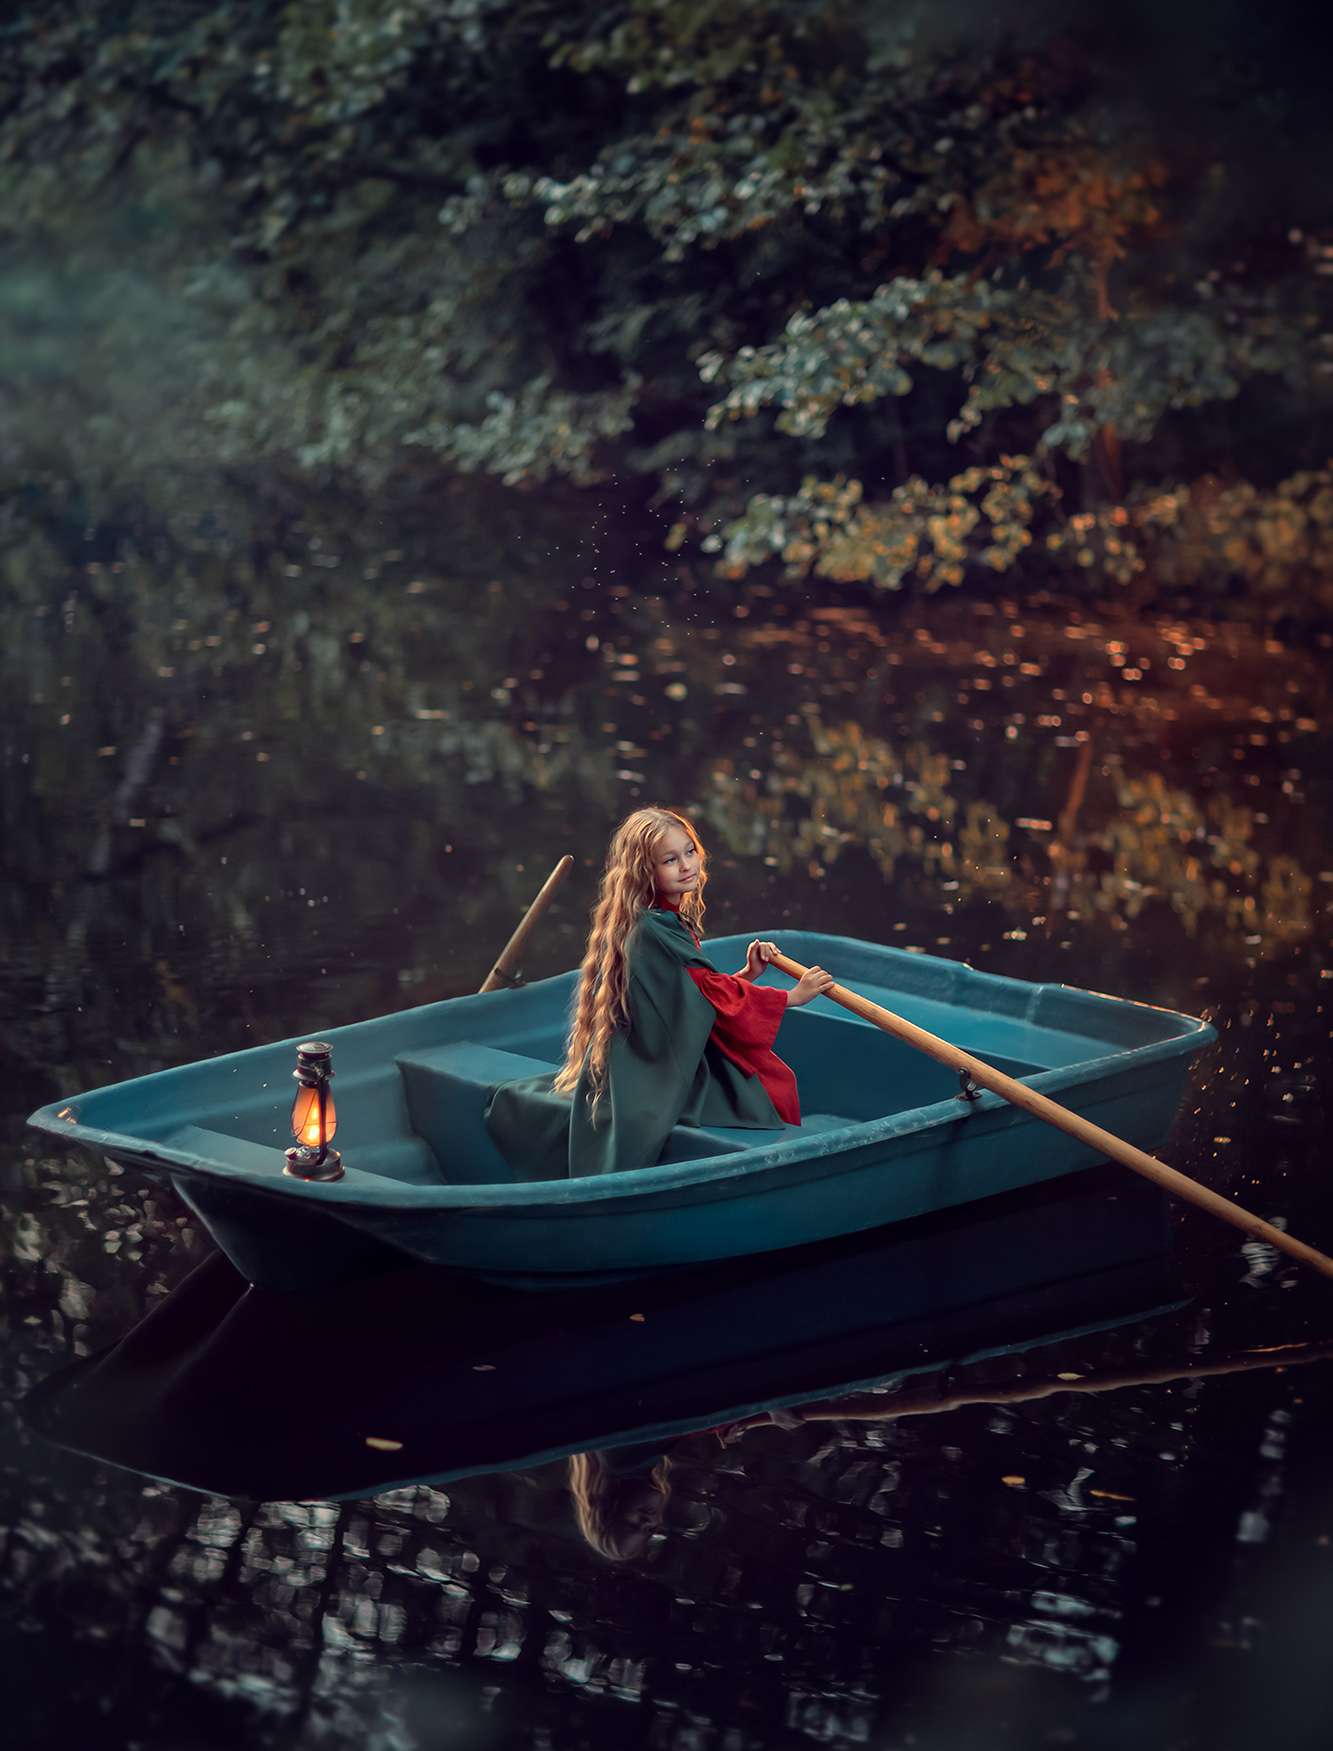 Фотосессия для девочки на природе в лодке. Обучение фотографии. before and after. photography masterclass